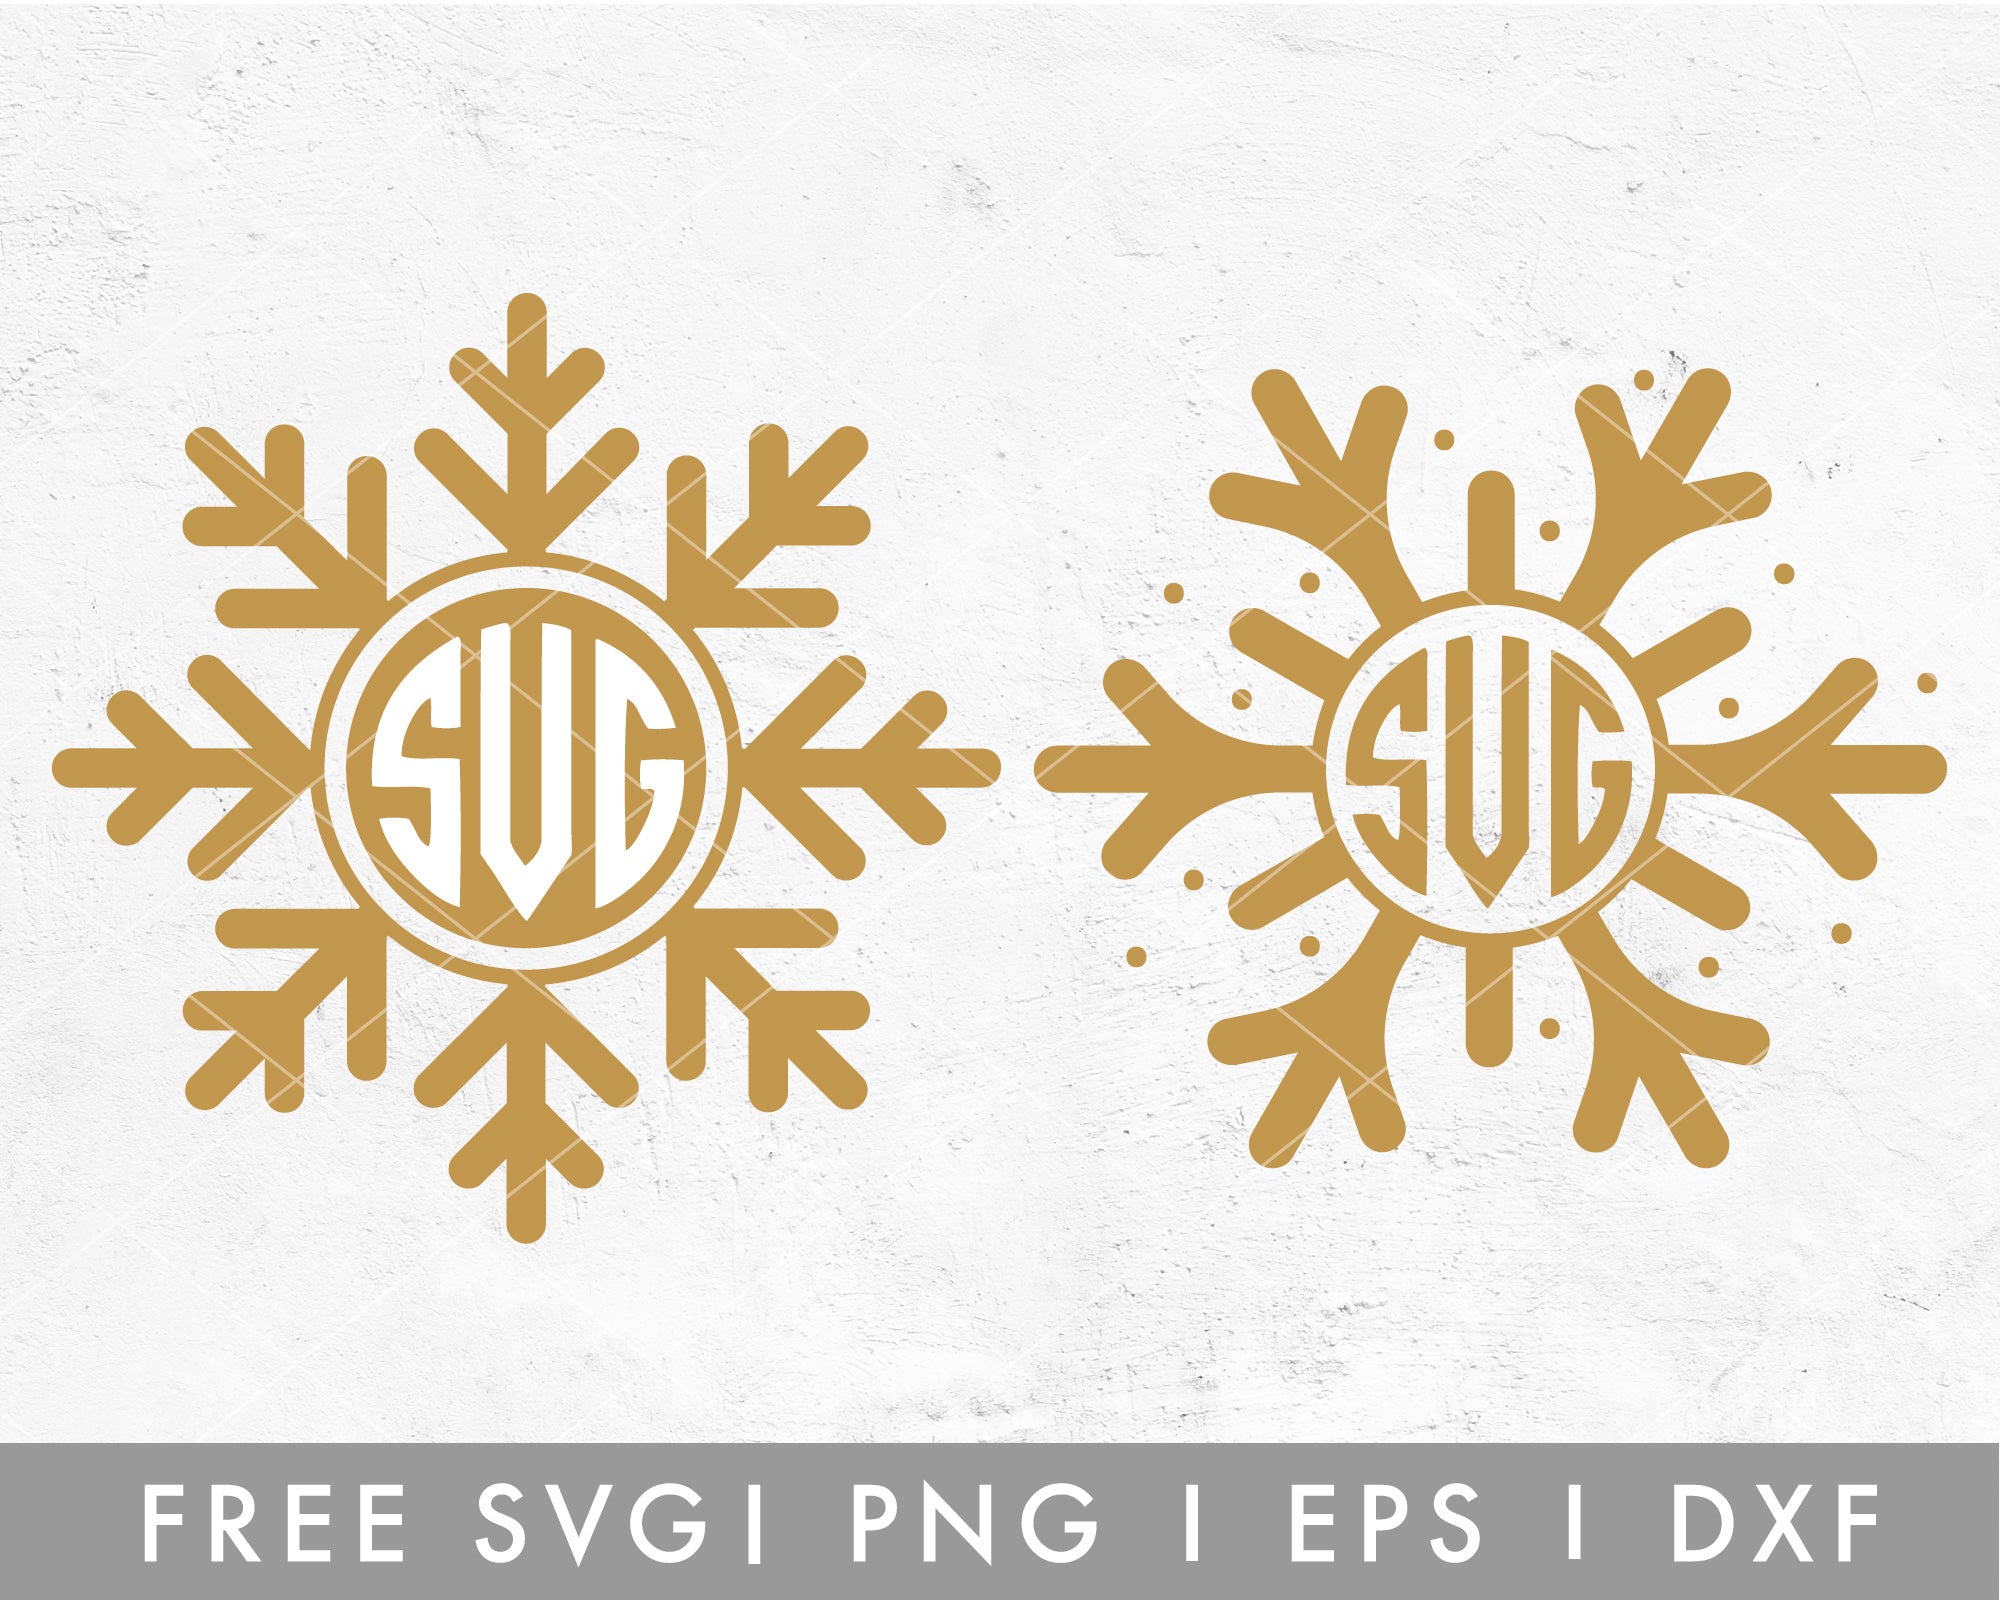 Snowflake Monogram, snowflake decor, farmhouse christmas